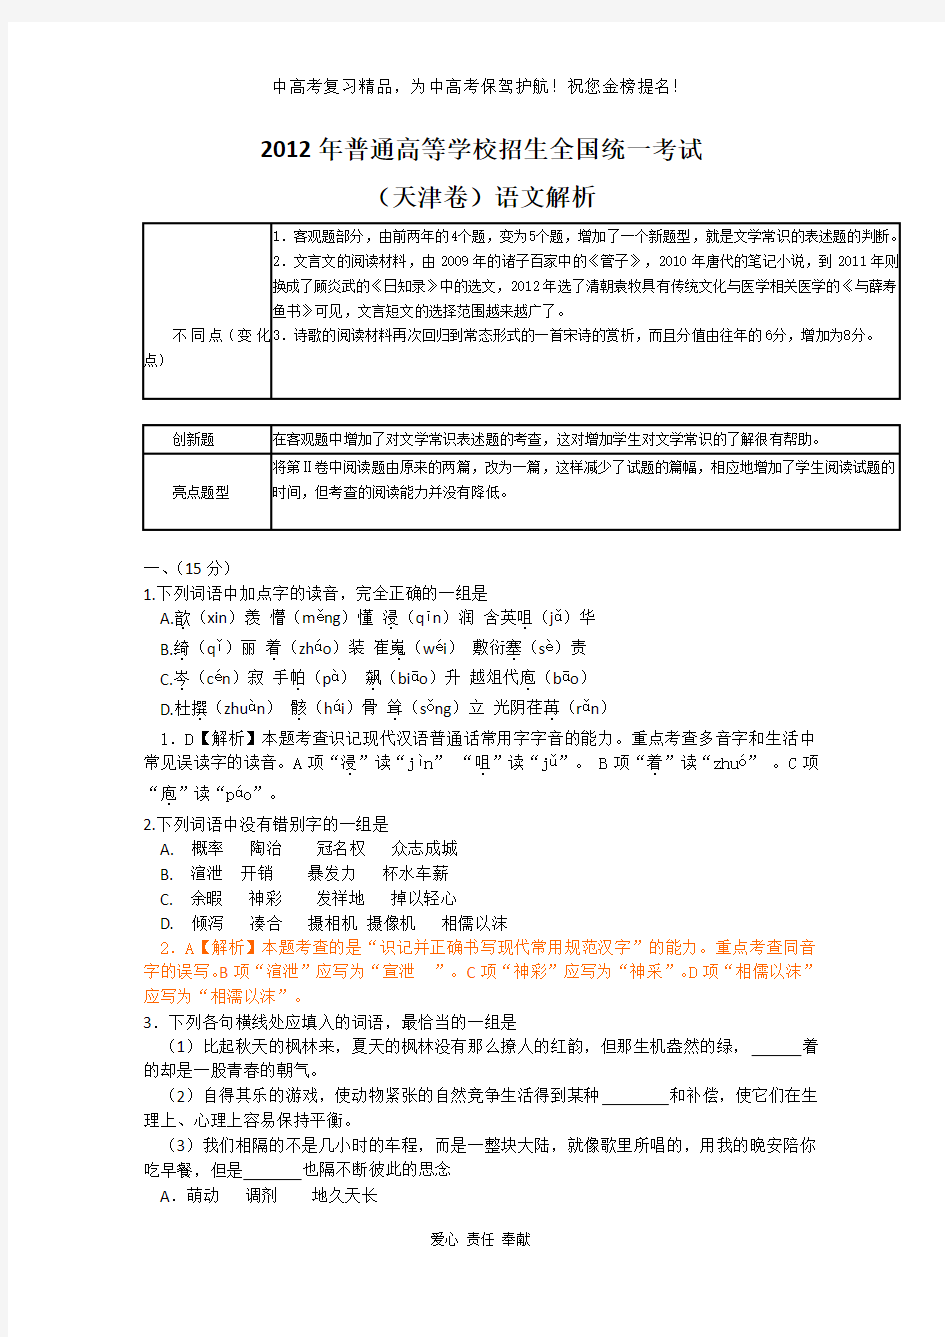 2012年语文高考试题答案及解析-天津